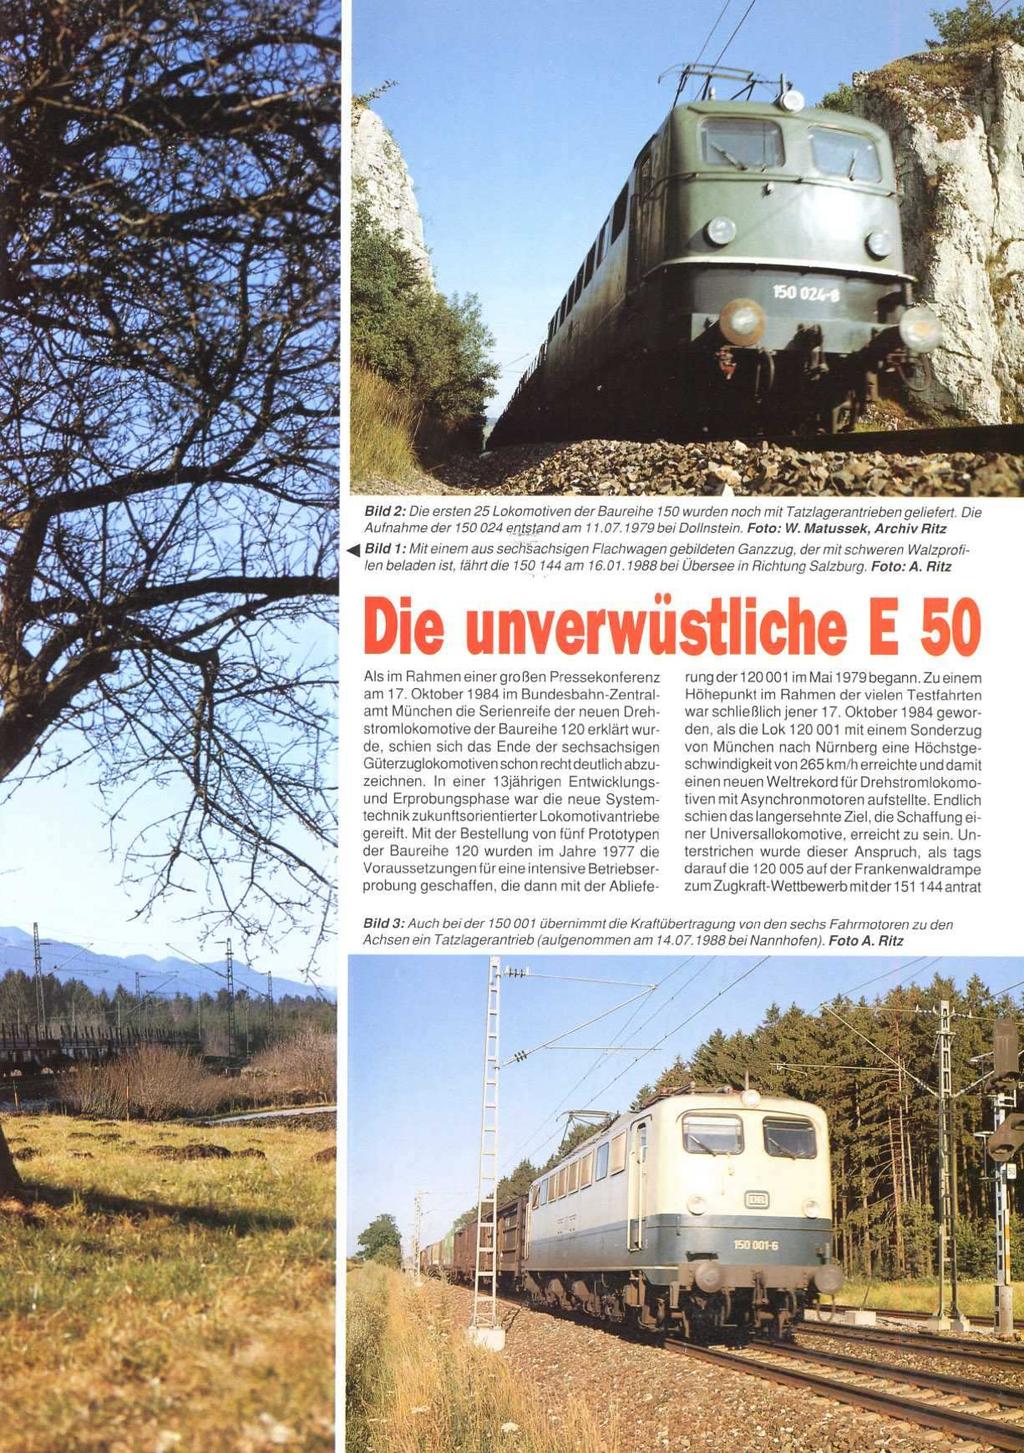 I l irsten 25 Lokomotiven der Baureihe 150 wurden noch m/t latzlagerantrieben geliefert. Die 150 024 e.r$$and am 11.07.7979 bei Dollnstein. Foto: W.